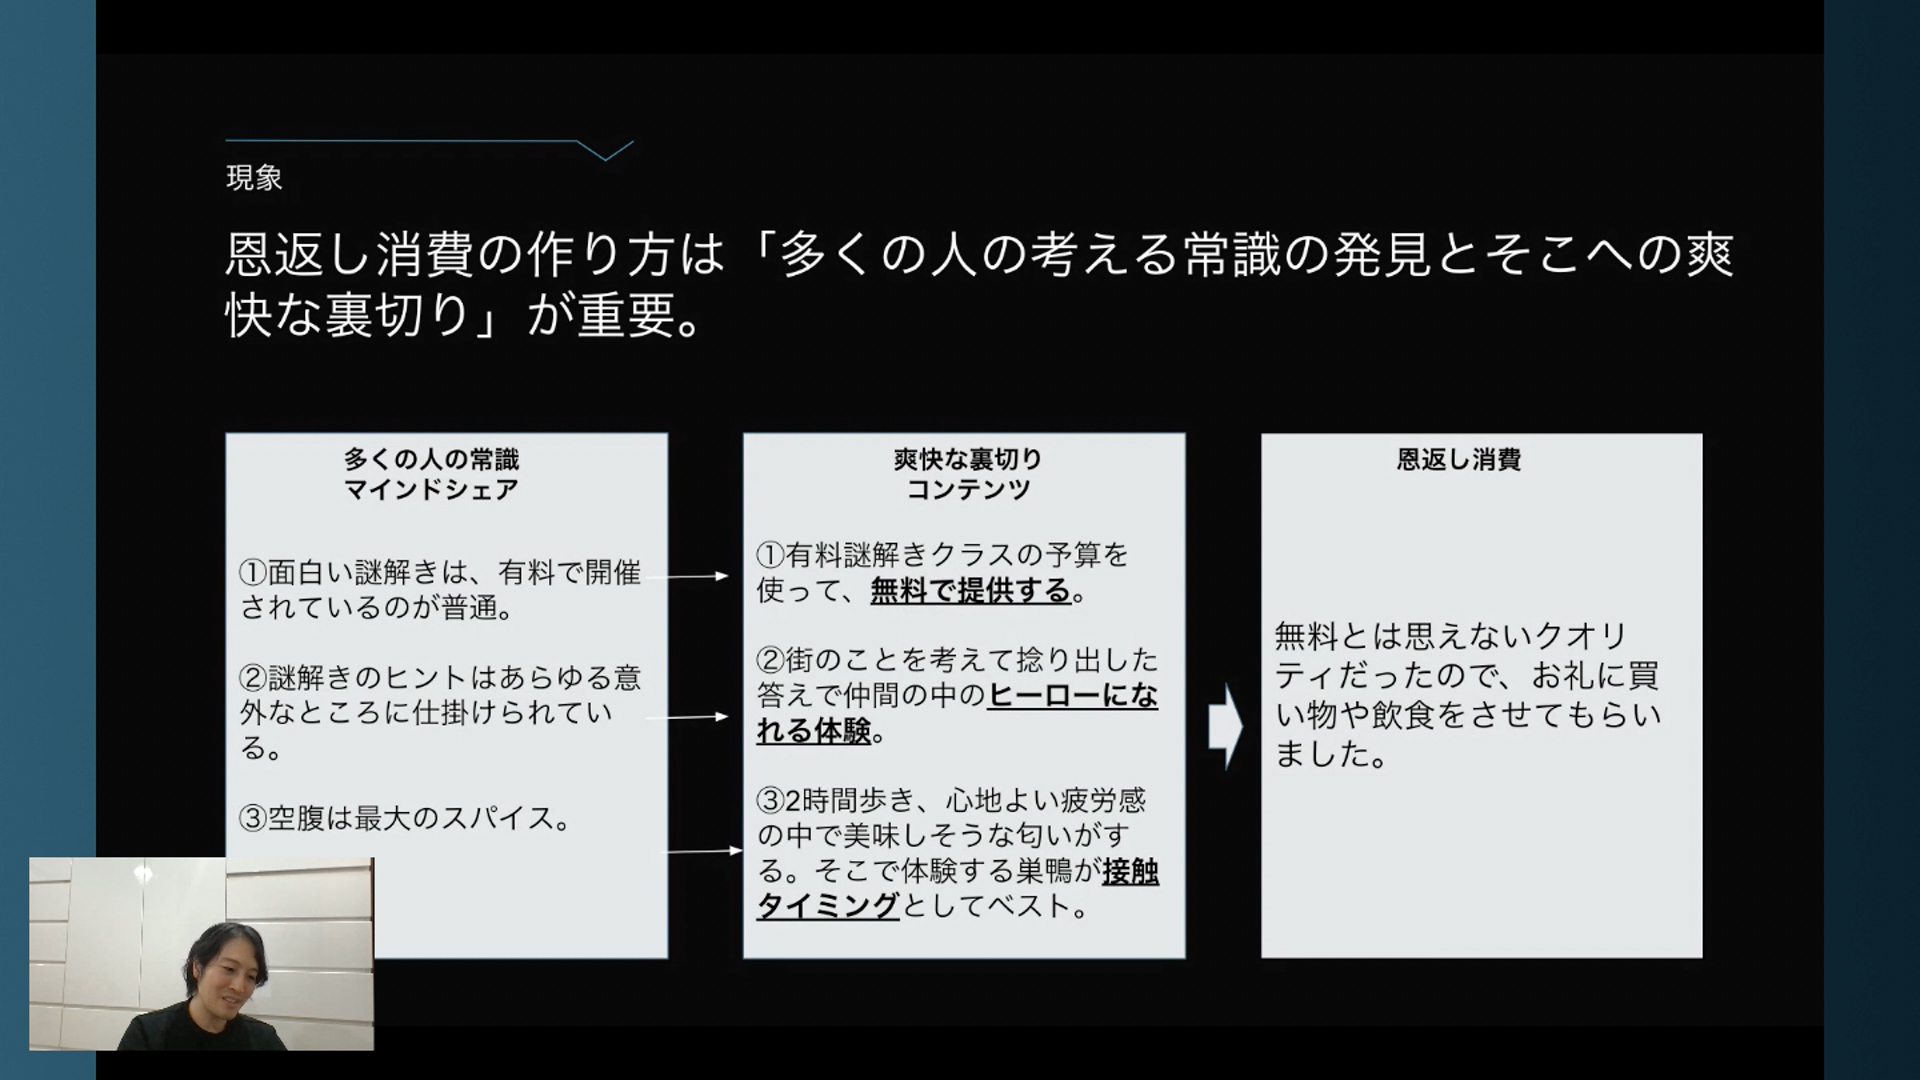 東京 巣鴨の 謎解きゲーム で 恩返し消費 が生まれたワケ カギは 消費者とコンテンツの 接触タイミング ログミーbiz